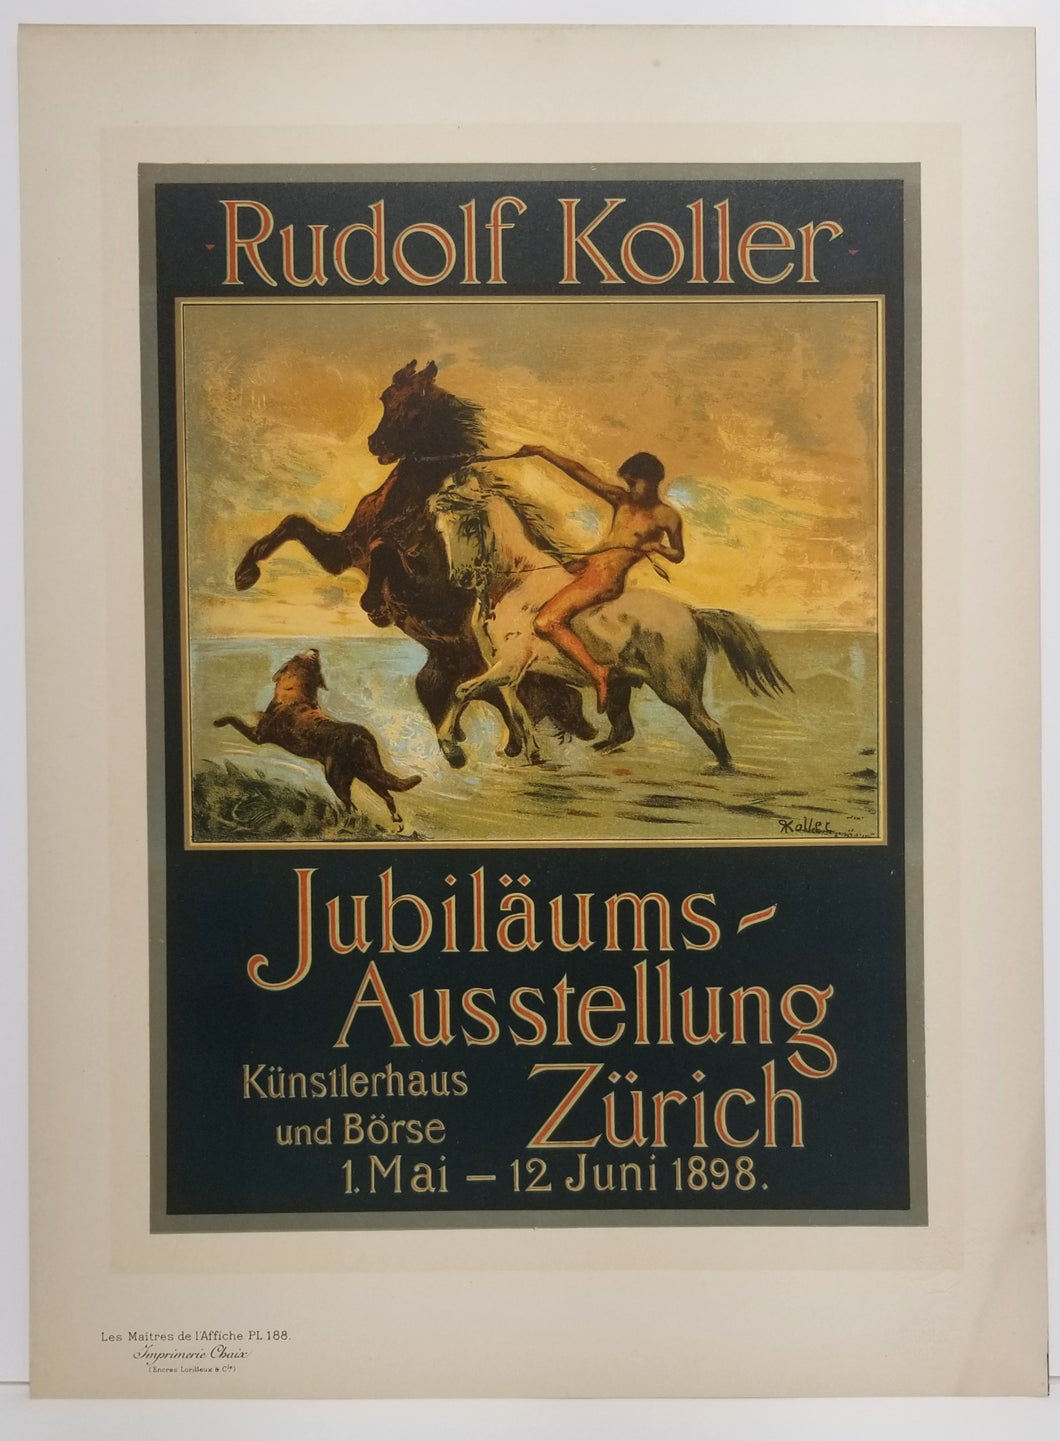 Jubiläums Ausstellung. 1898-1899.